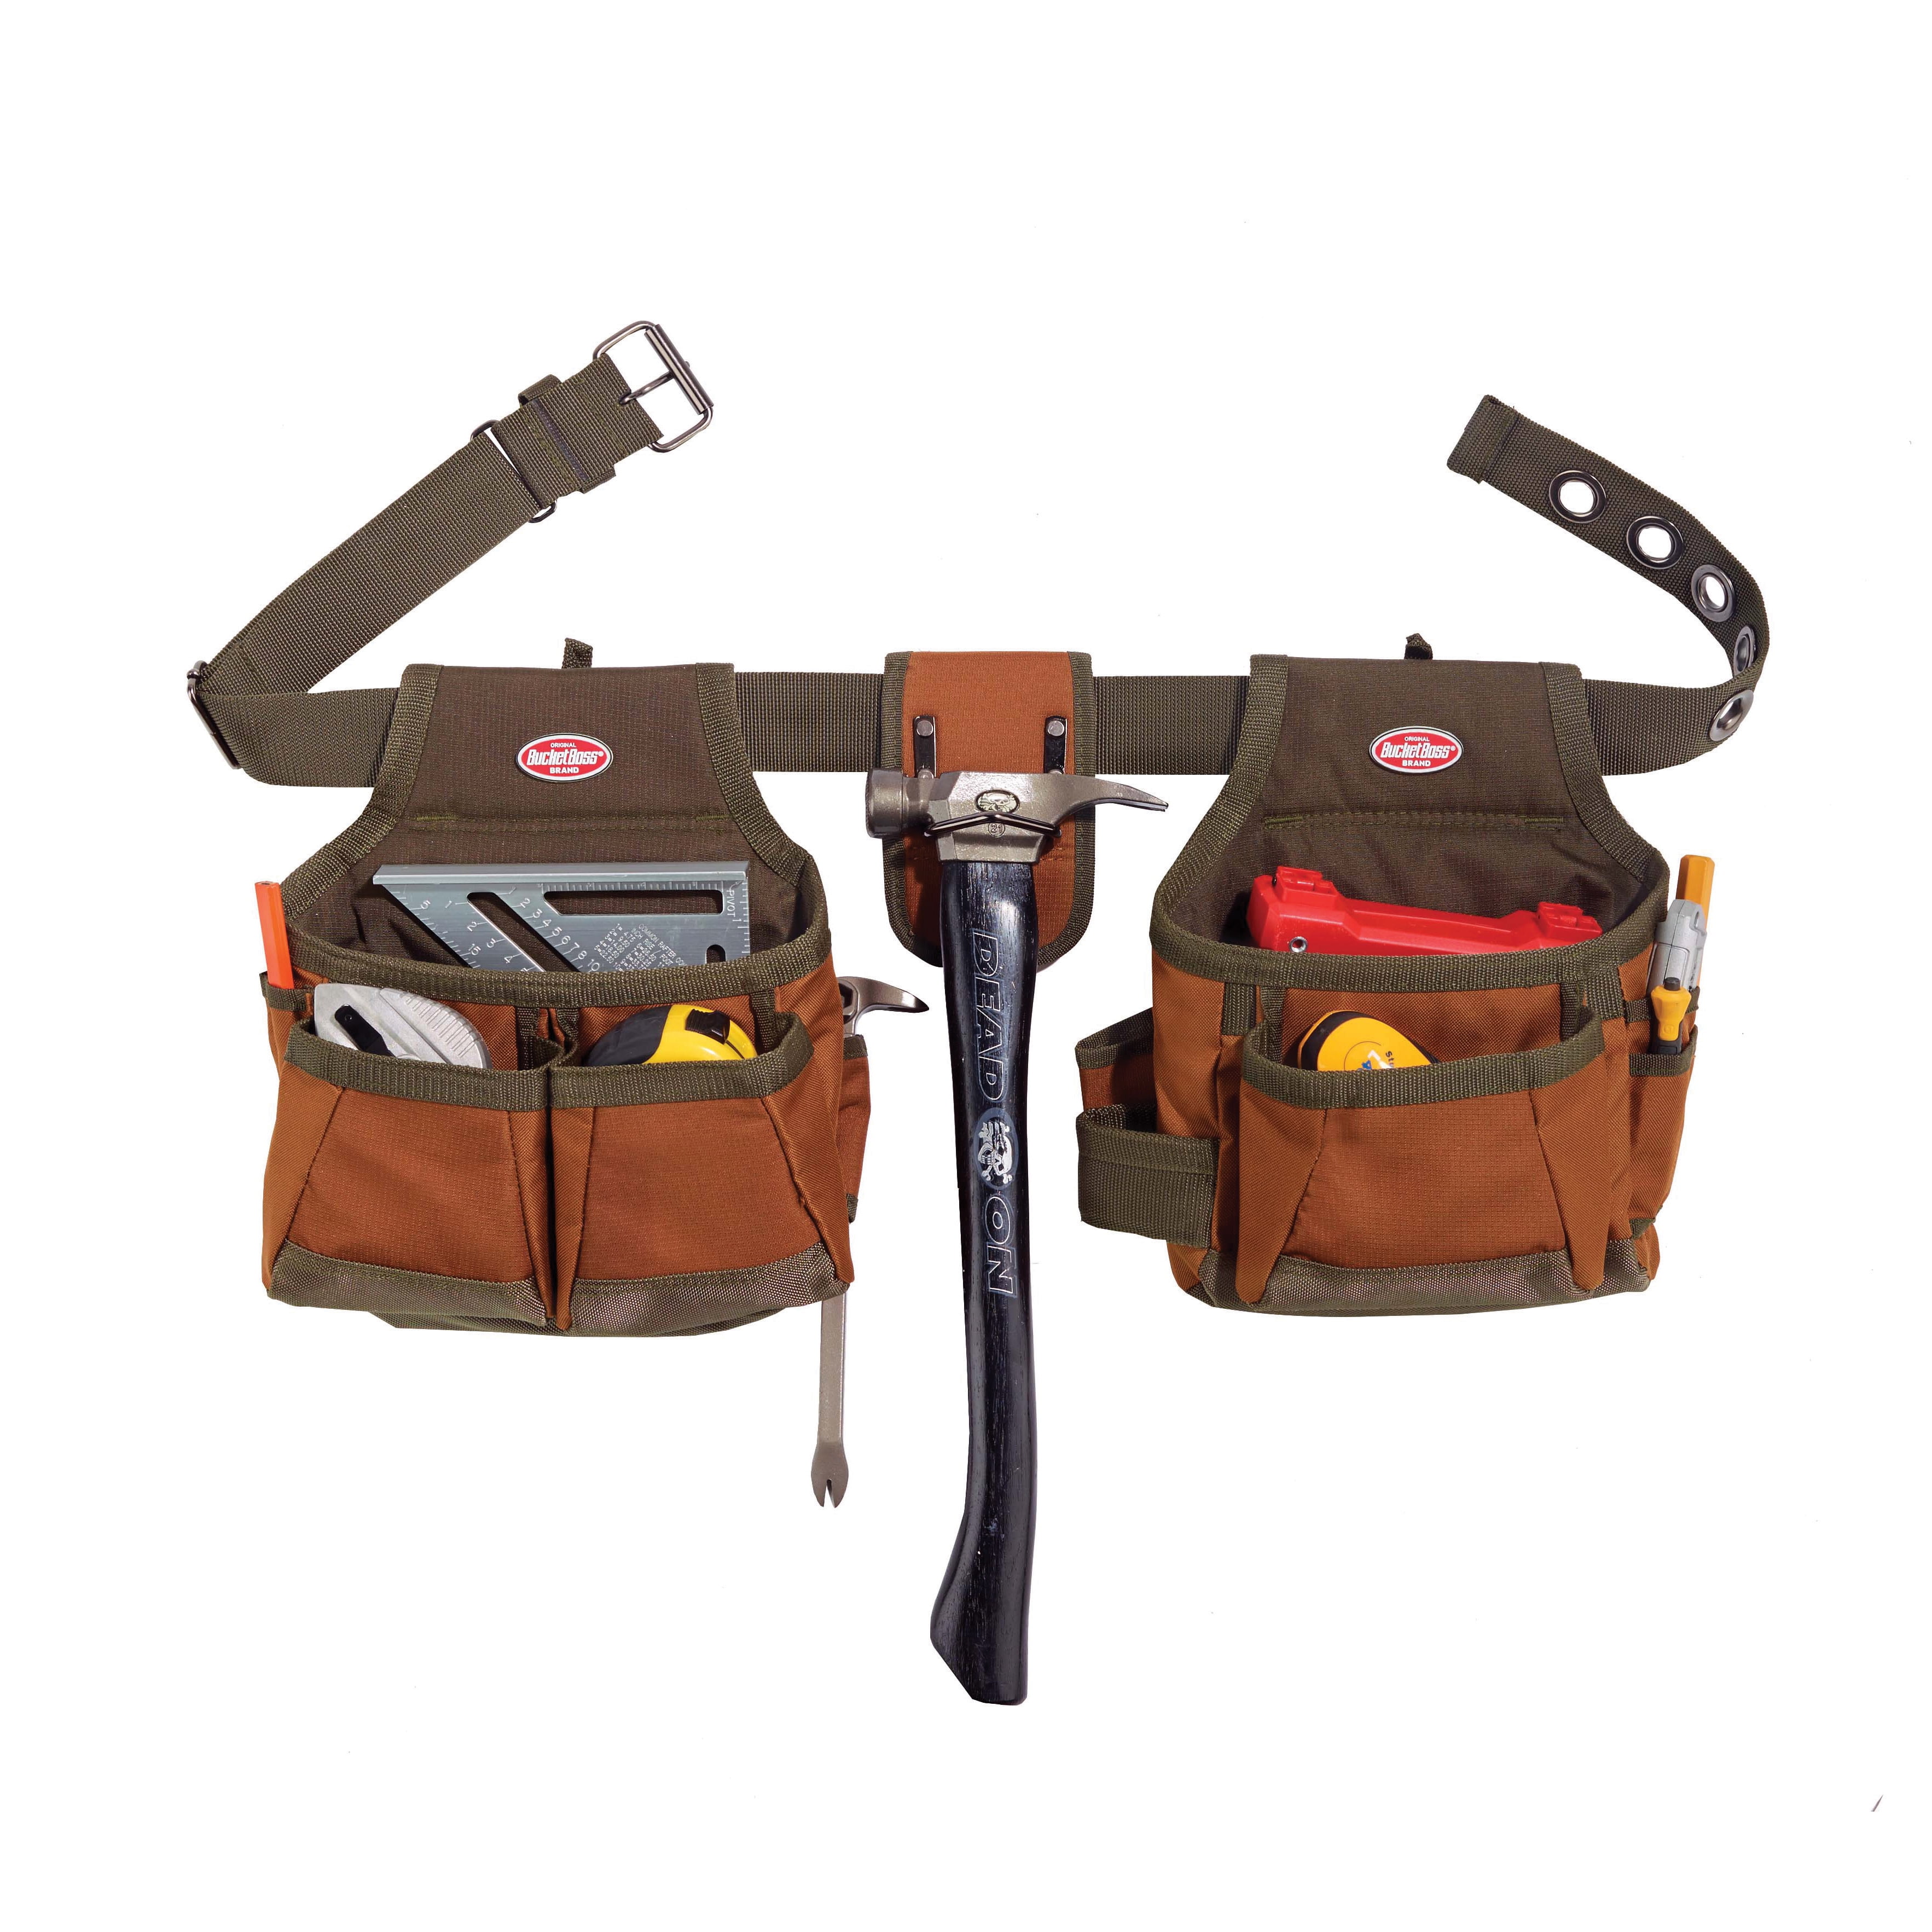 Bucket Boss 3 Tool Bag Tool Belt with Suspenders, in Digital Camo 